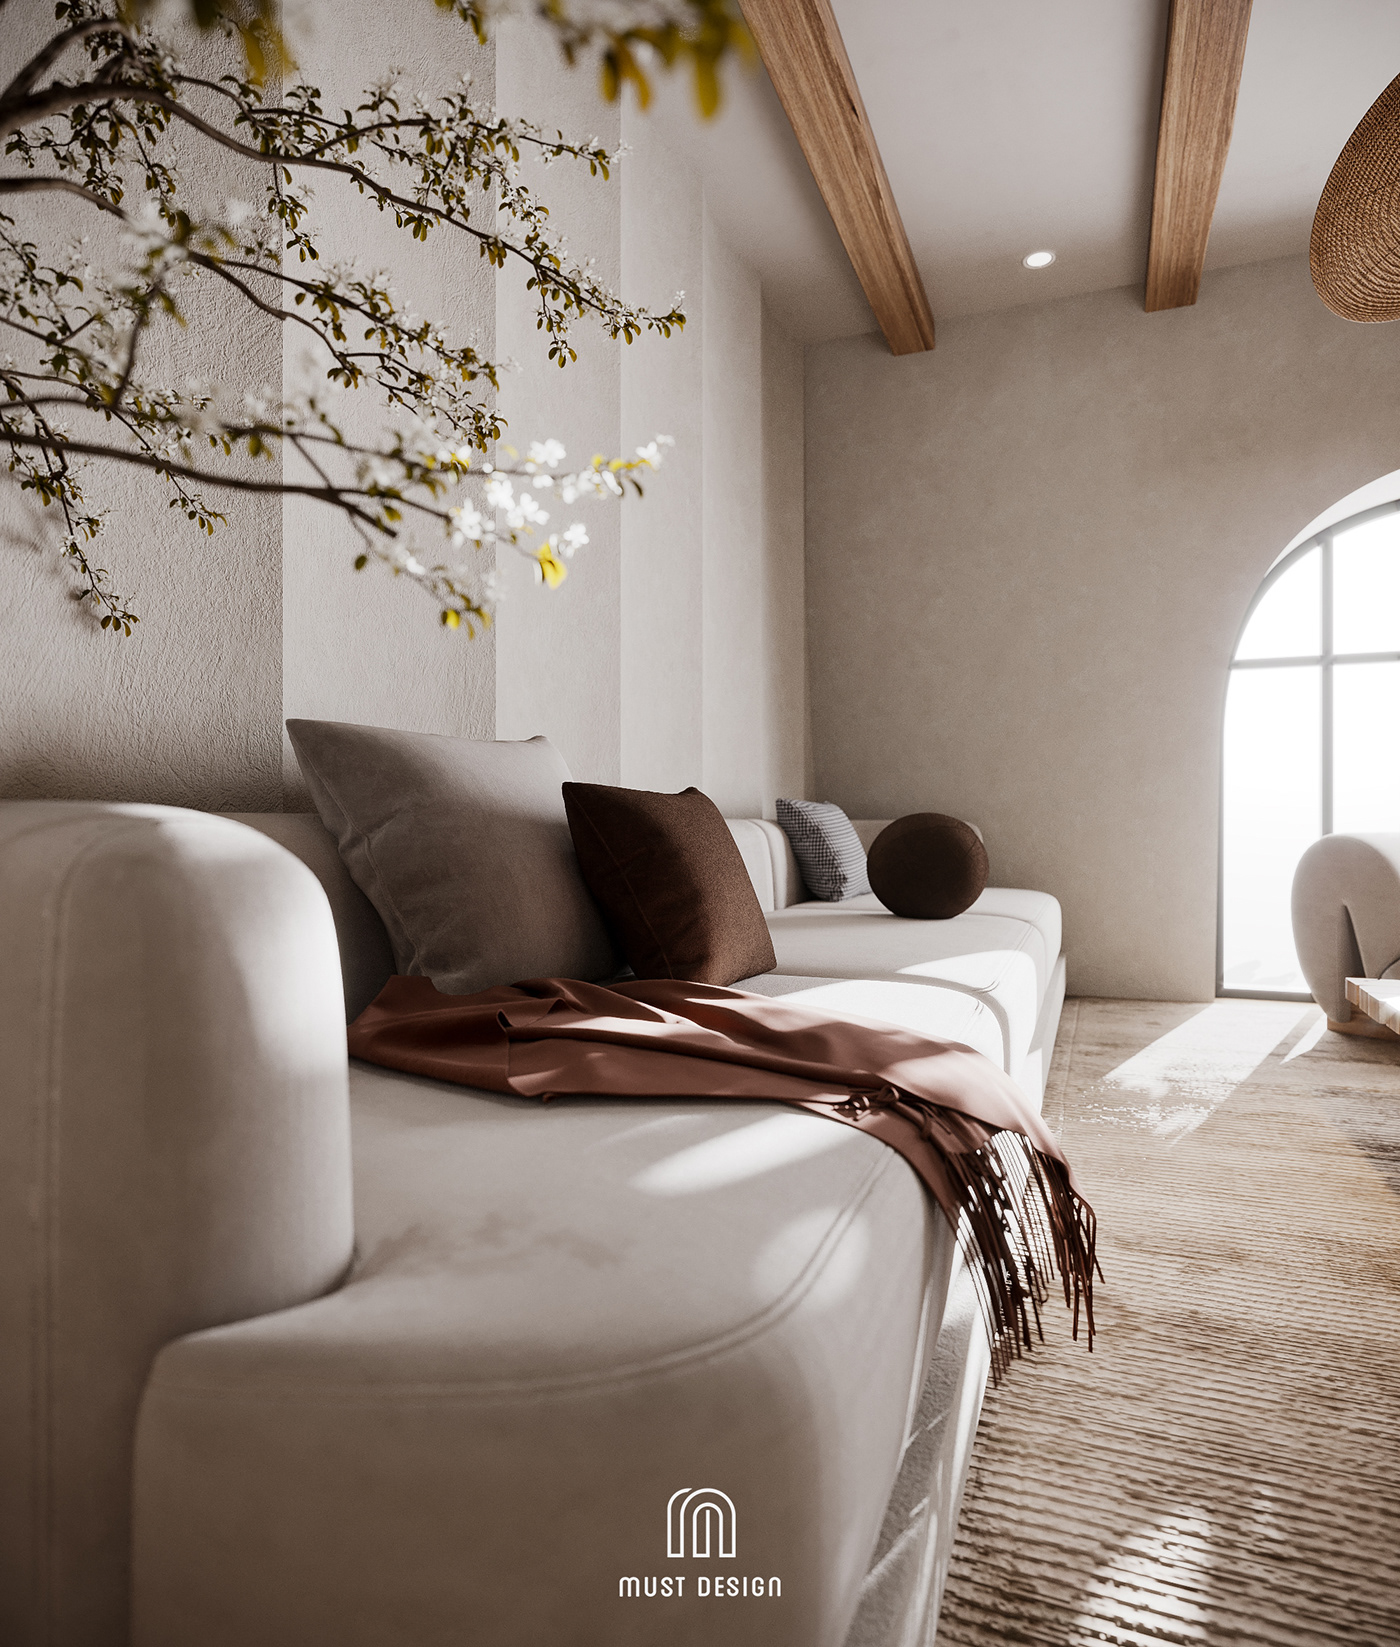 3ds max homestay design Interior Render Wabisabi wabisabi interior